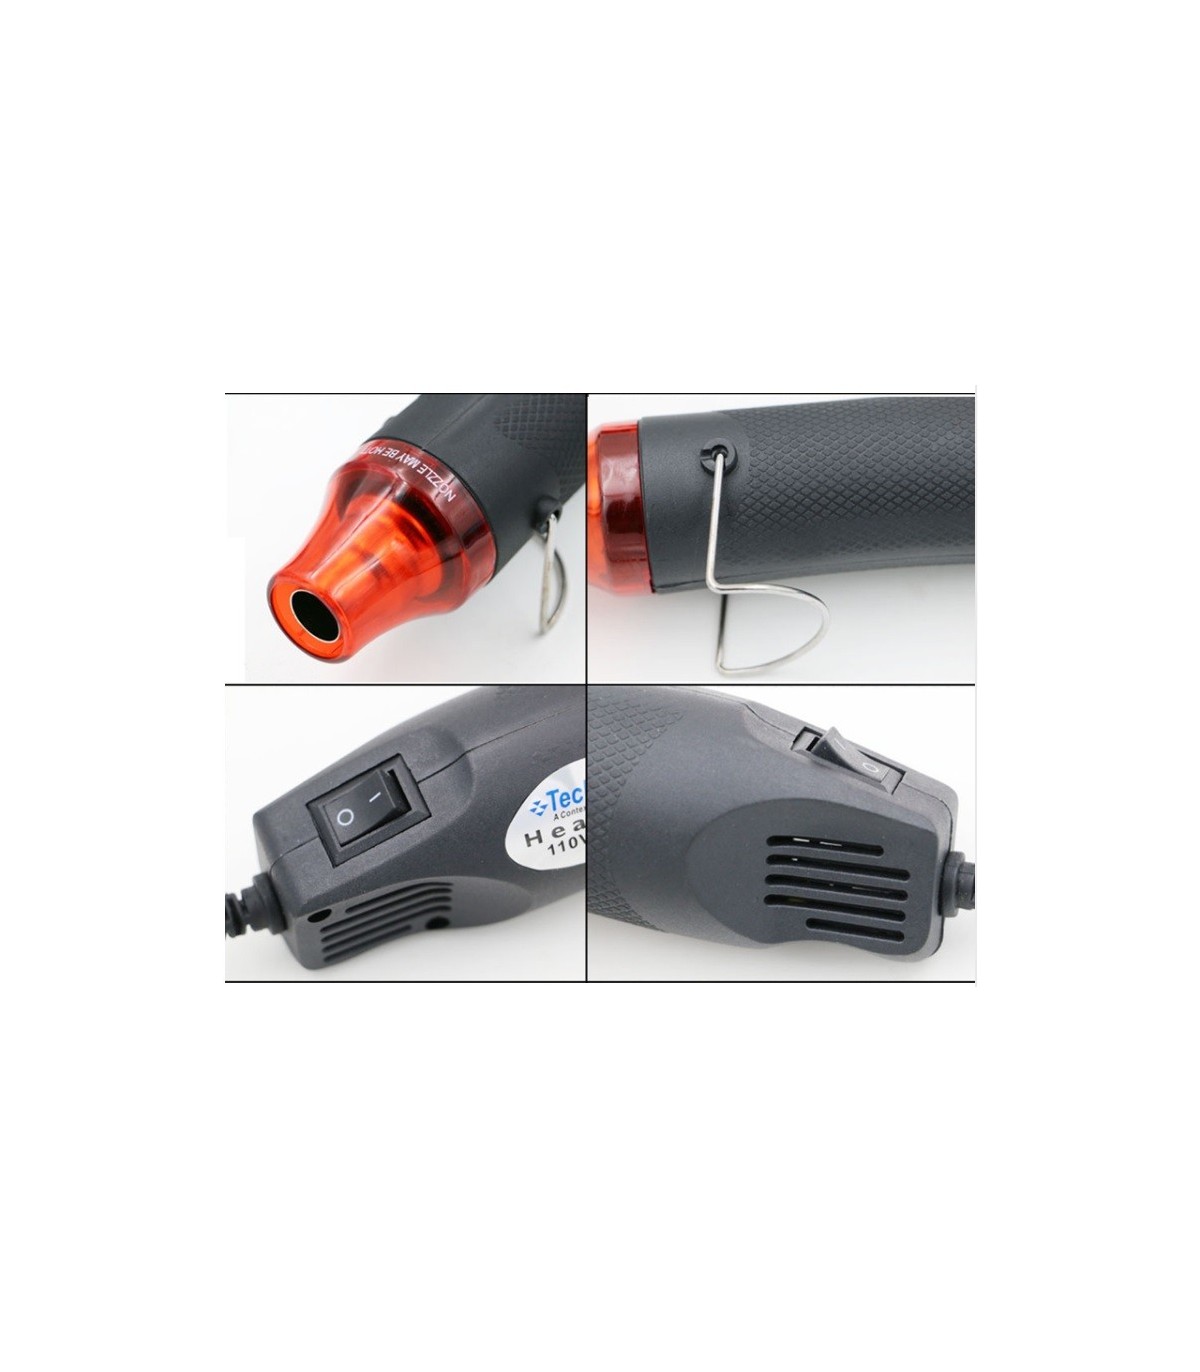 Mini Pistolet à Air Chaud 220V, Décapeur Thermique Portatif pour Emballage  Rétractable, Gaine Thermorétractable, Résine Époxy